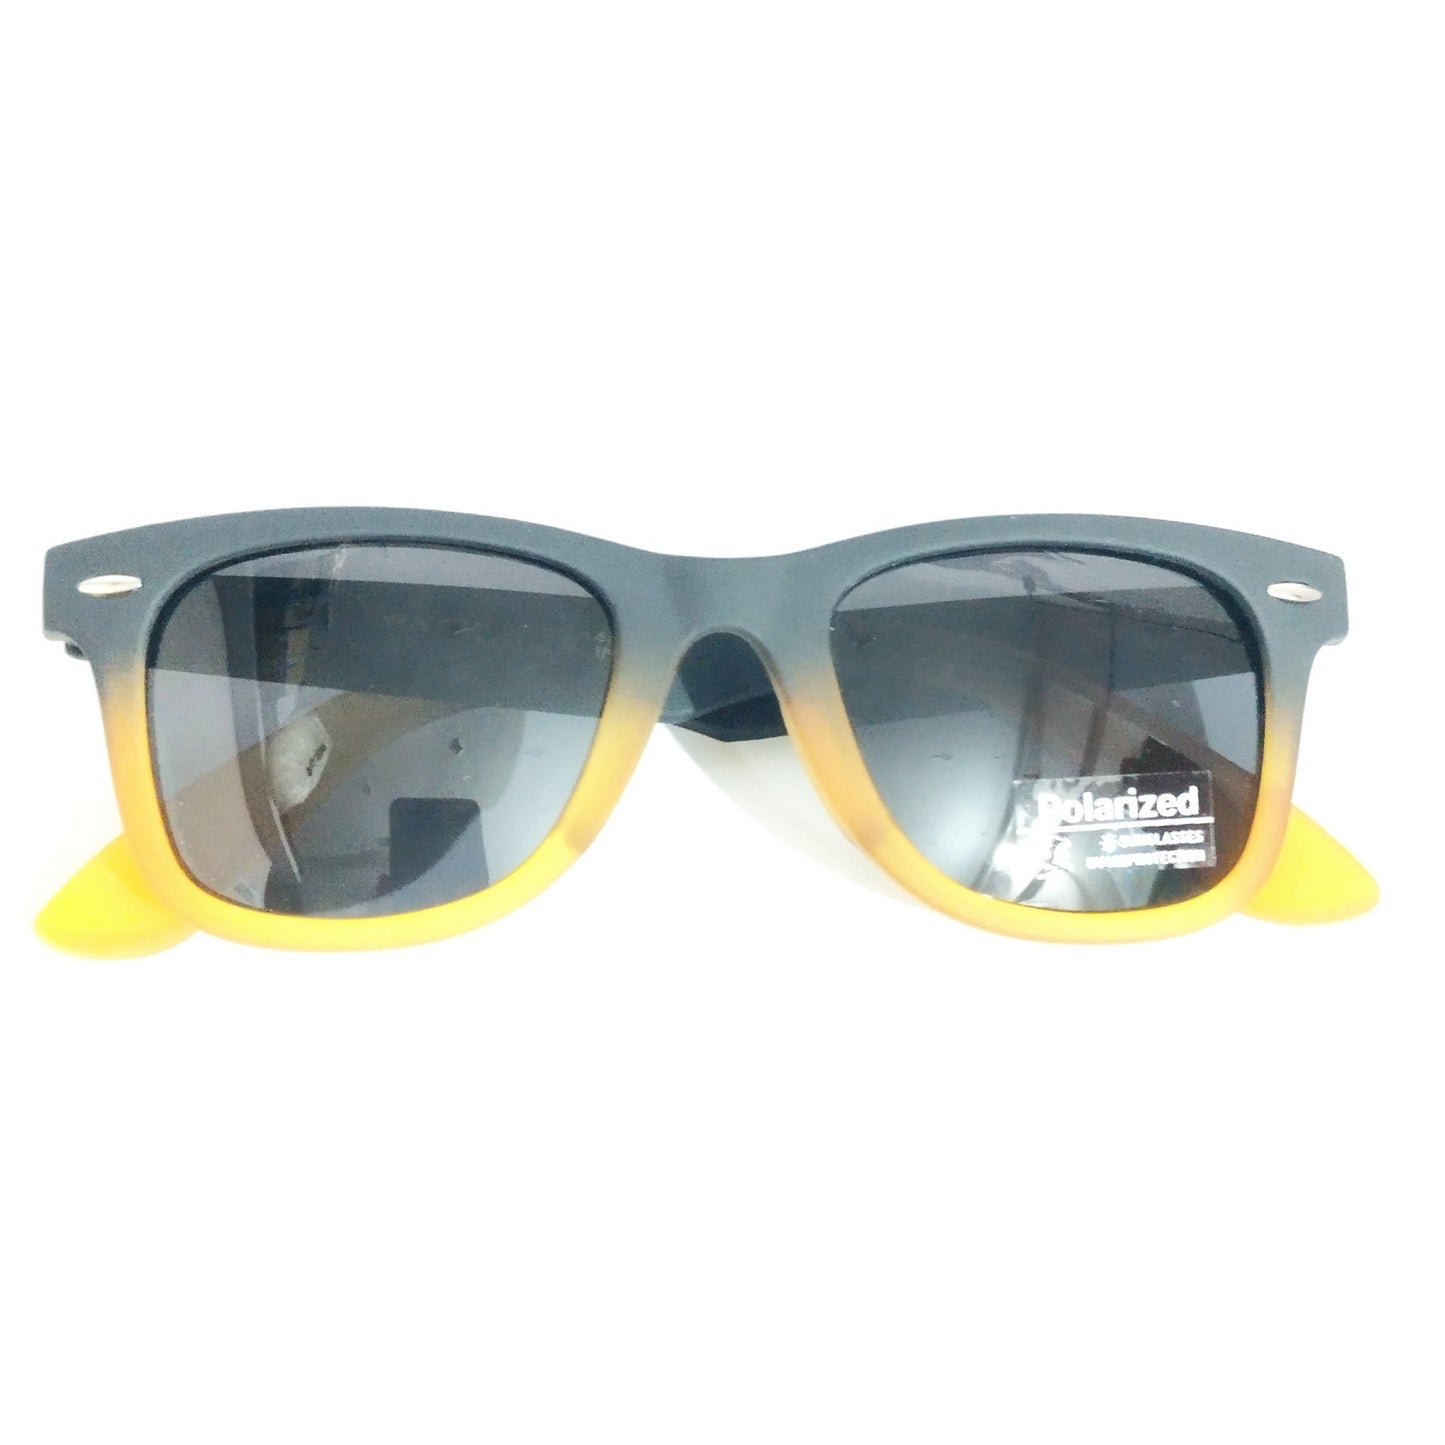 Black Orange Stylish Polarized Sunglasses for Men and Women